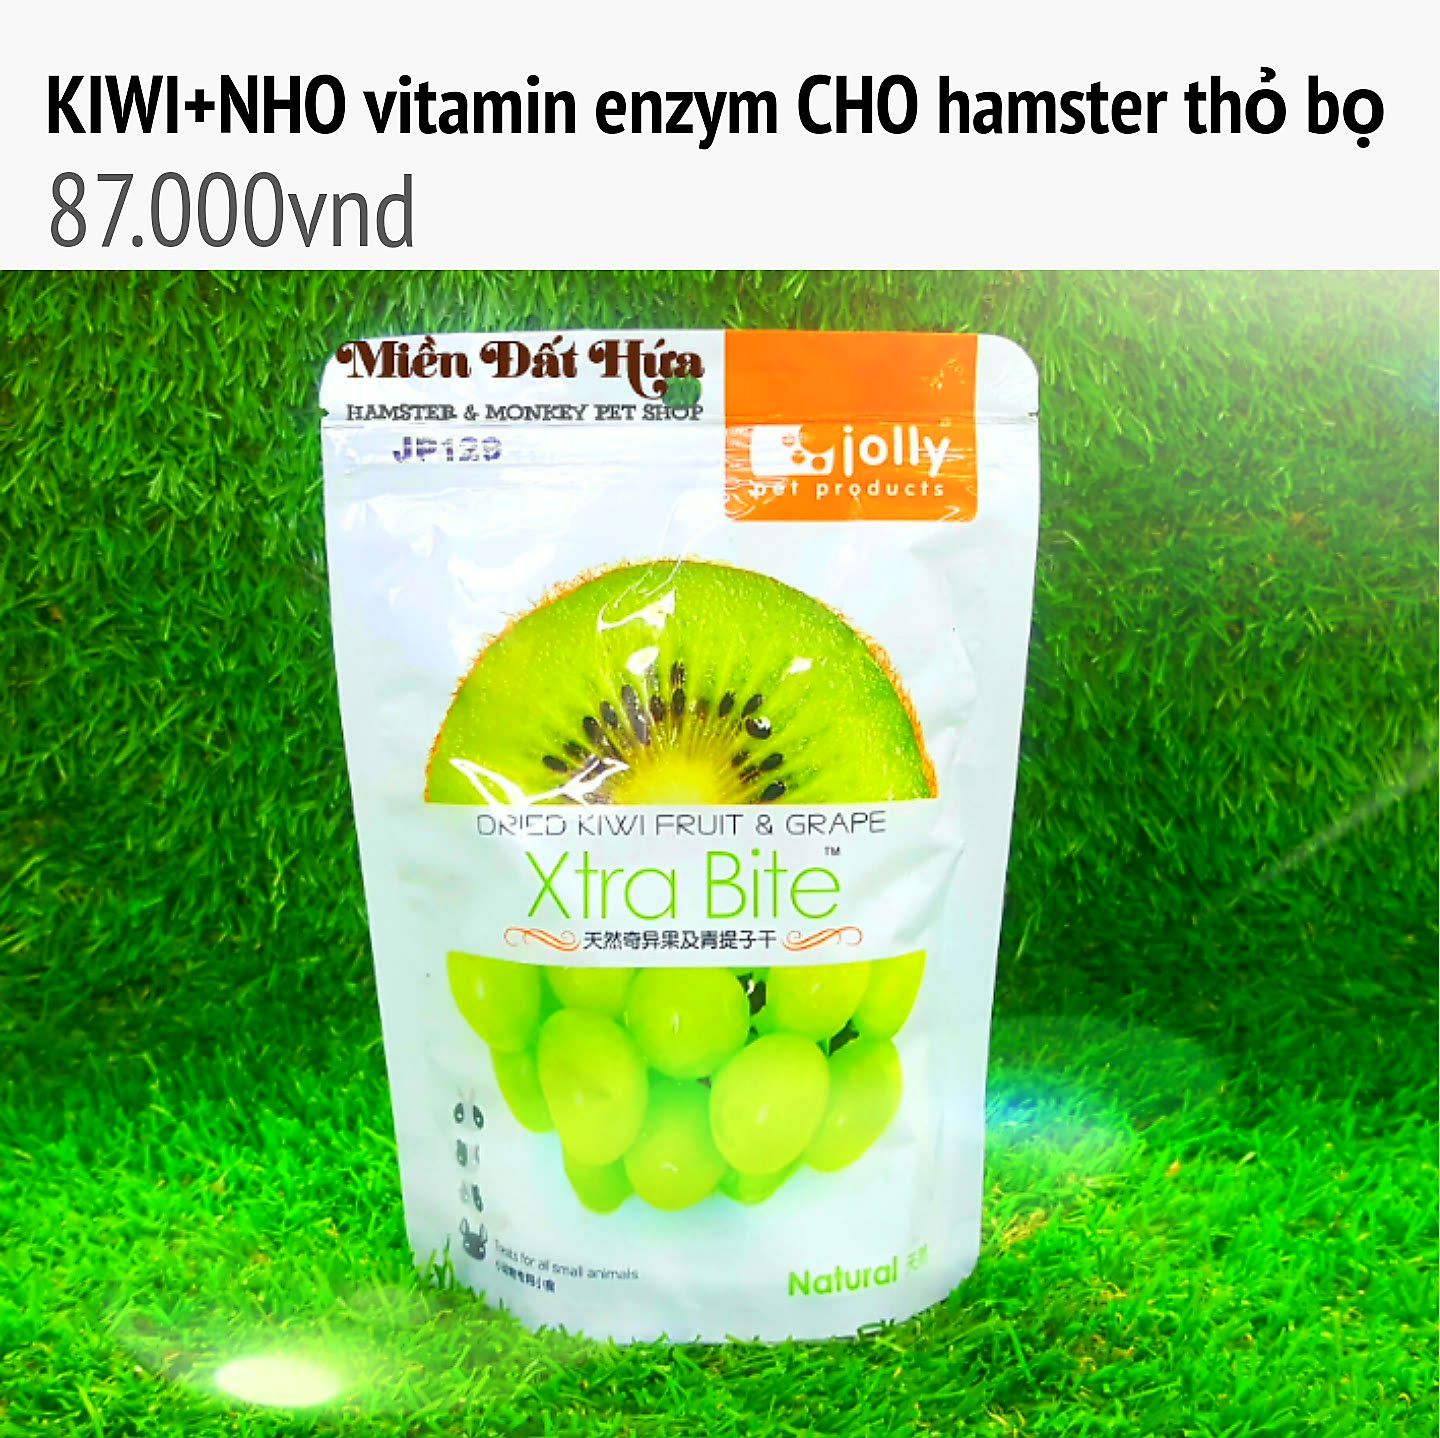 Kiwi nho vitamin cho thỏ bọ hamster